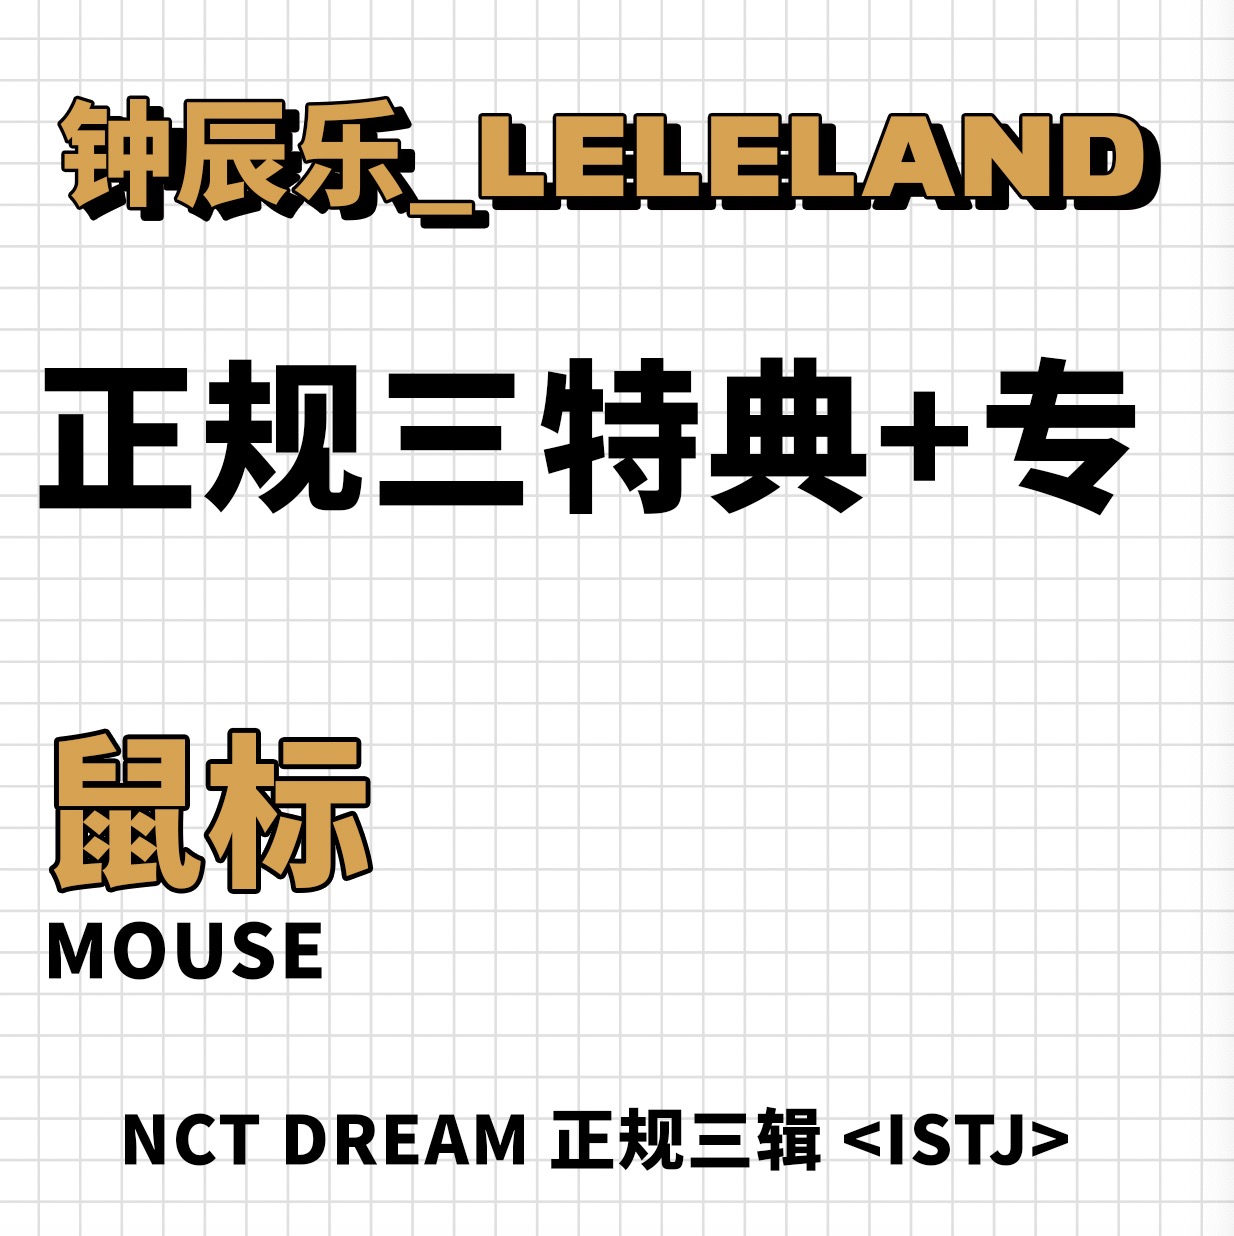 [全款 鼠标特典专] NCT DREAM - 正规3辑 [ISTJ]_钟辰乐吧_ChenLeBar